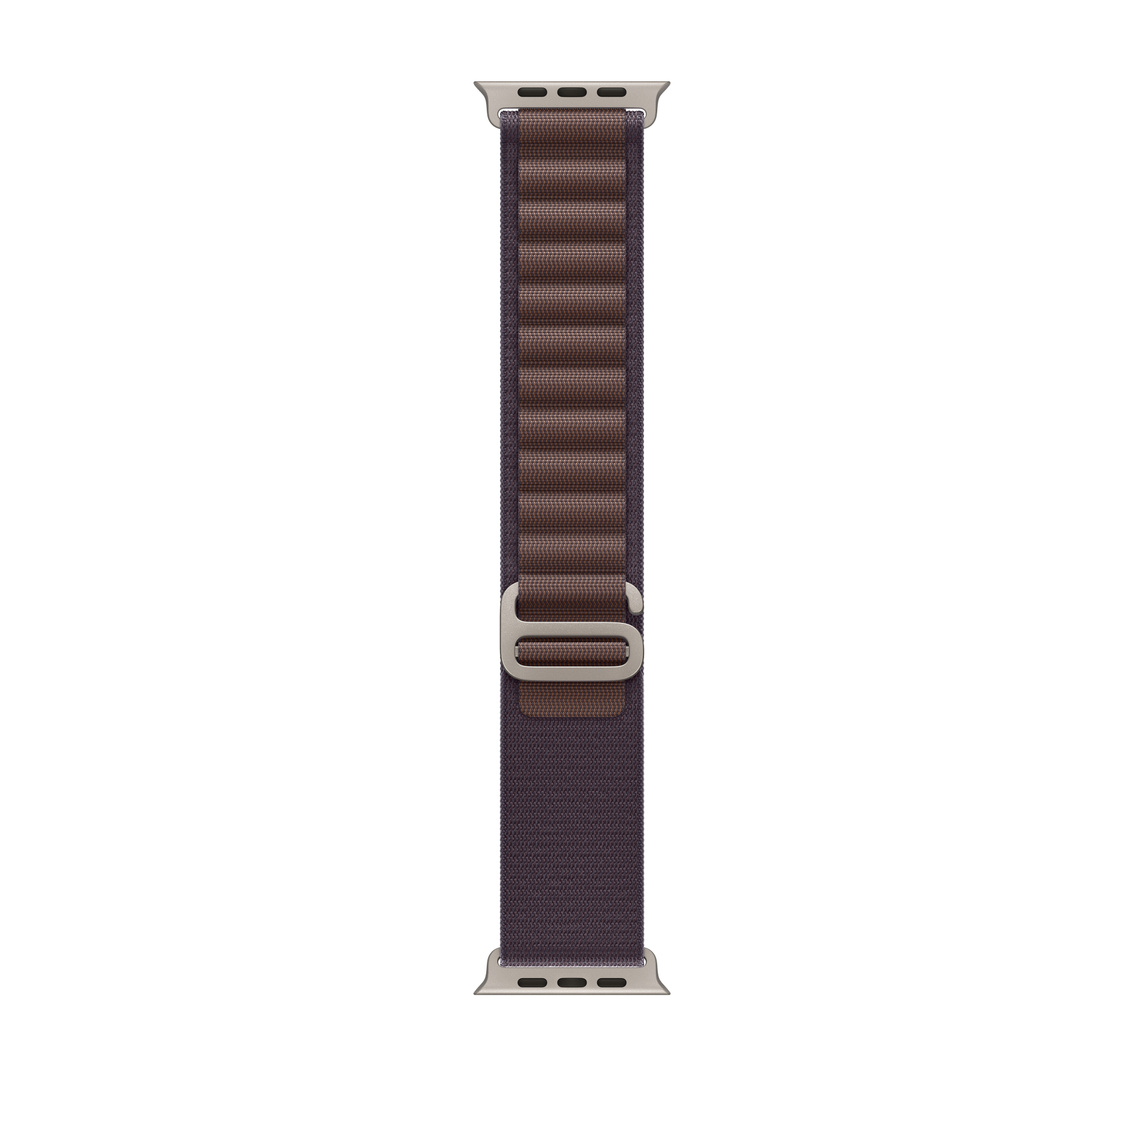 靛青色高山錶環，展示雙層織紋布料搭配錶環與鈦金屬 G 型環錶扣。